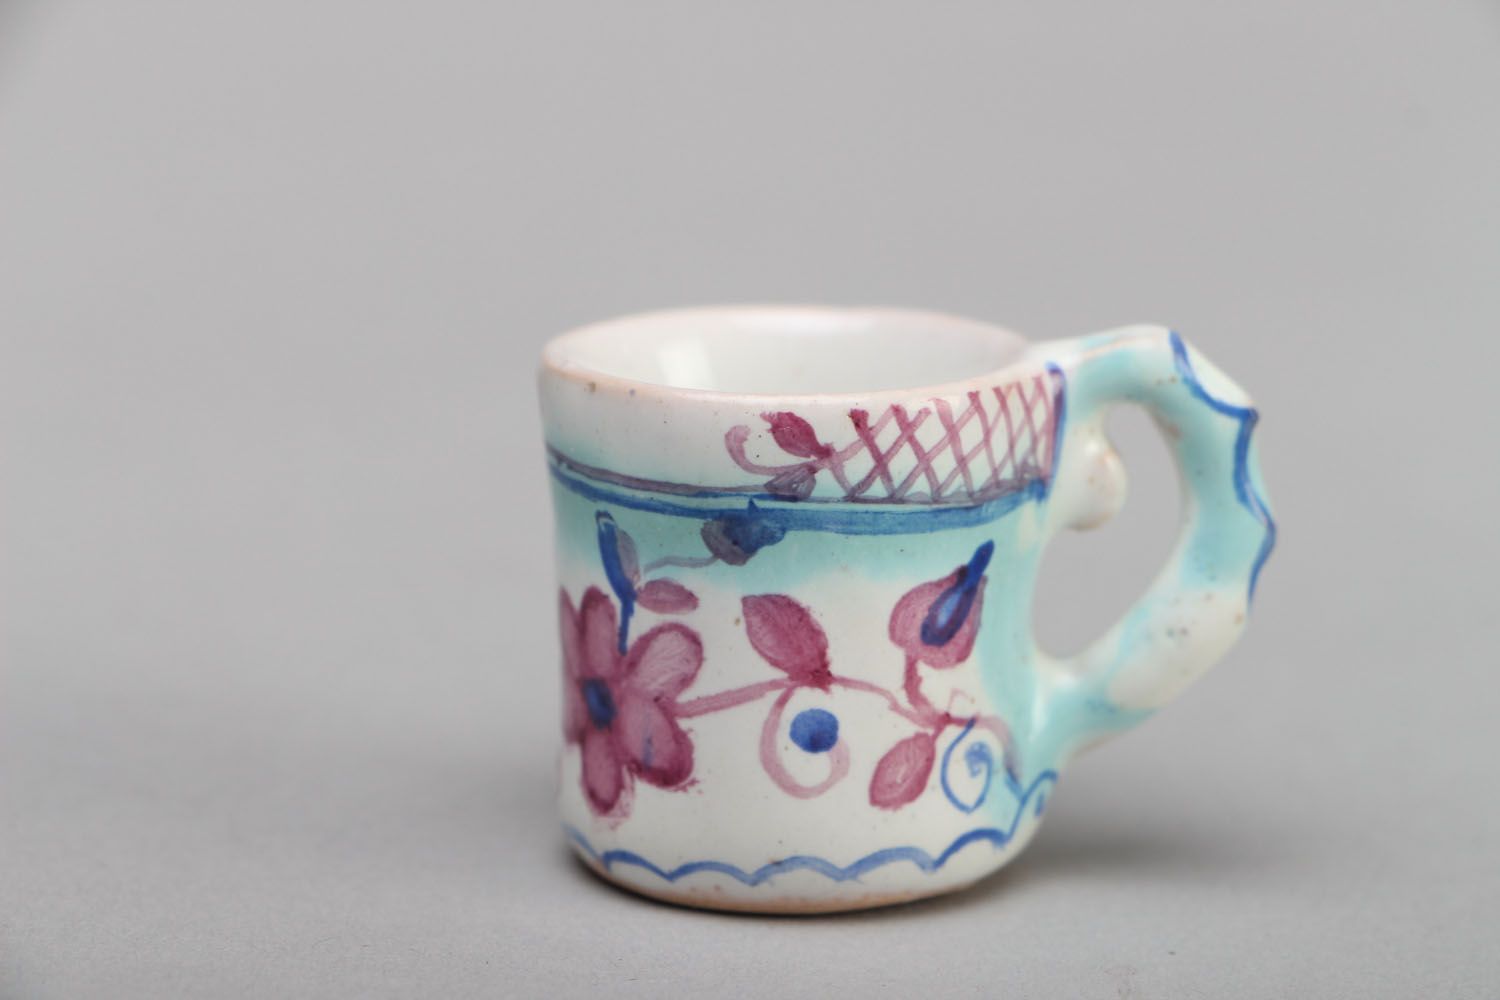 1 oz espresso decorative cup wth handle in white and blue color photo 1